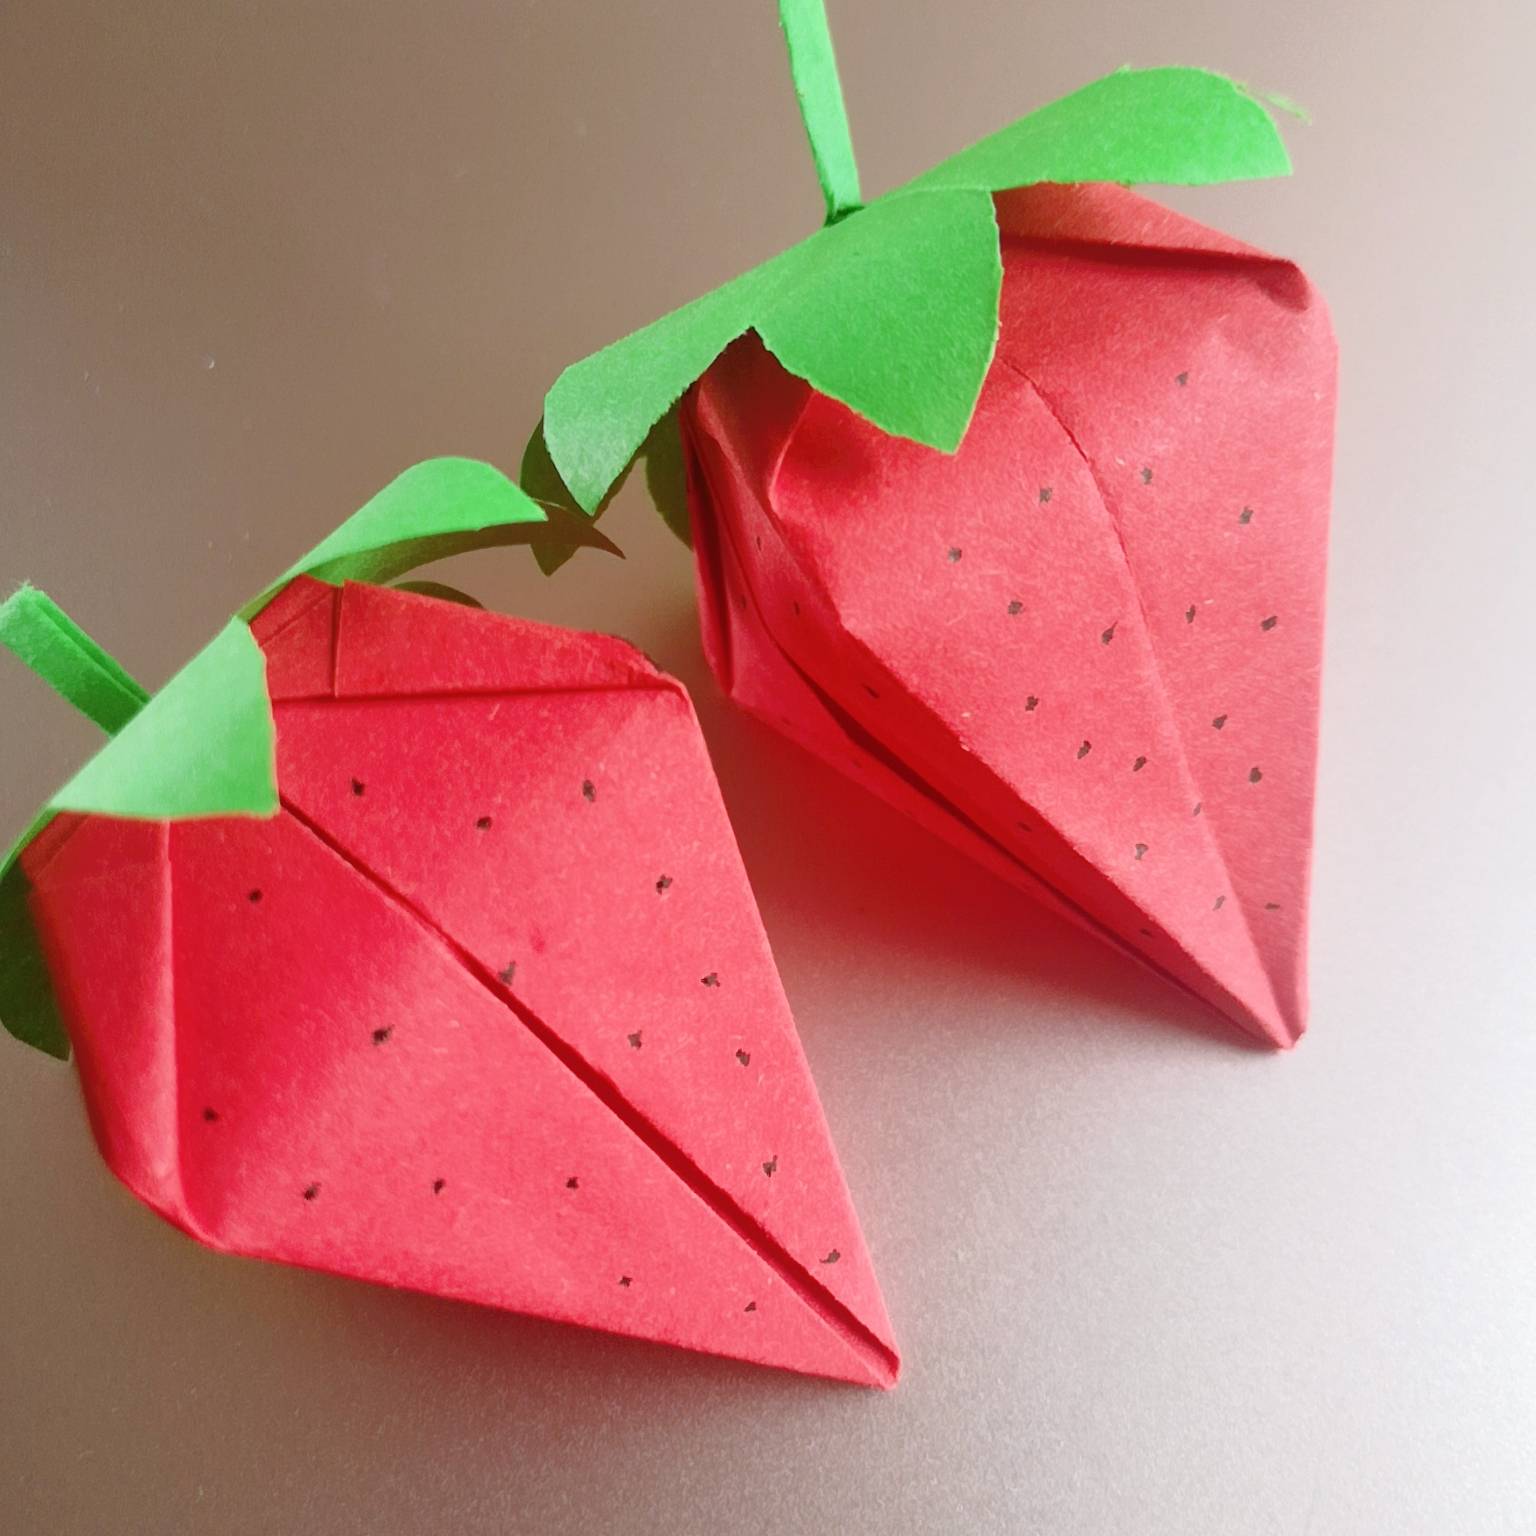 手工大全:可爱的草莓折纸,详细图解教程